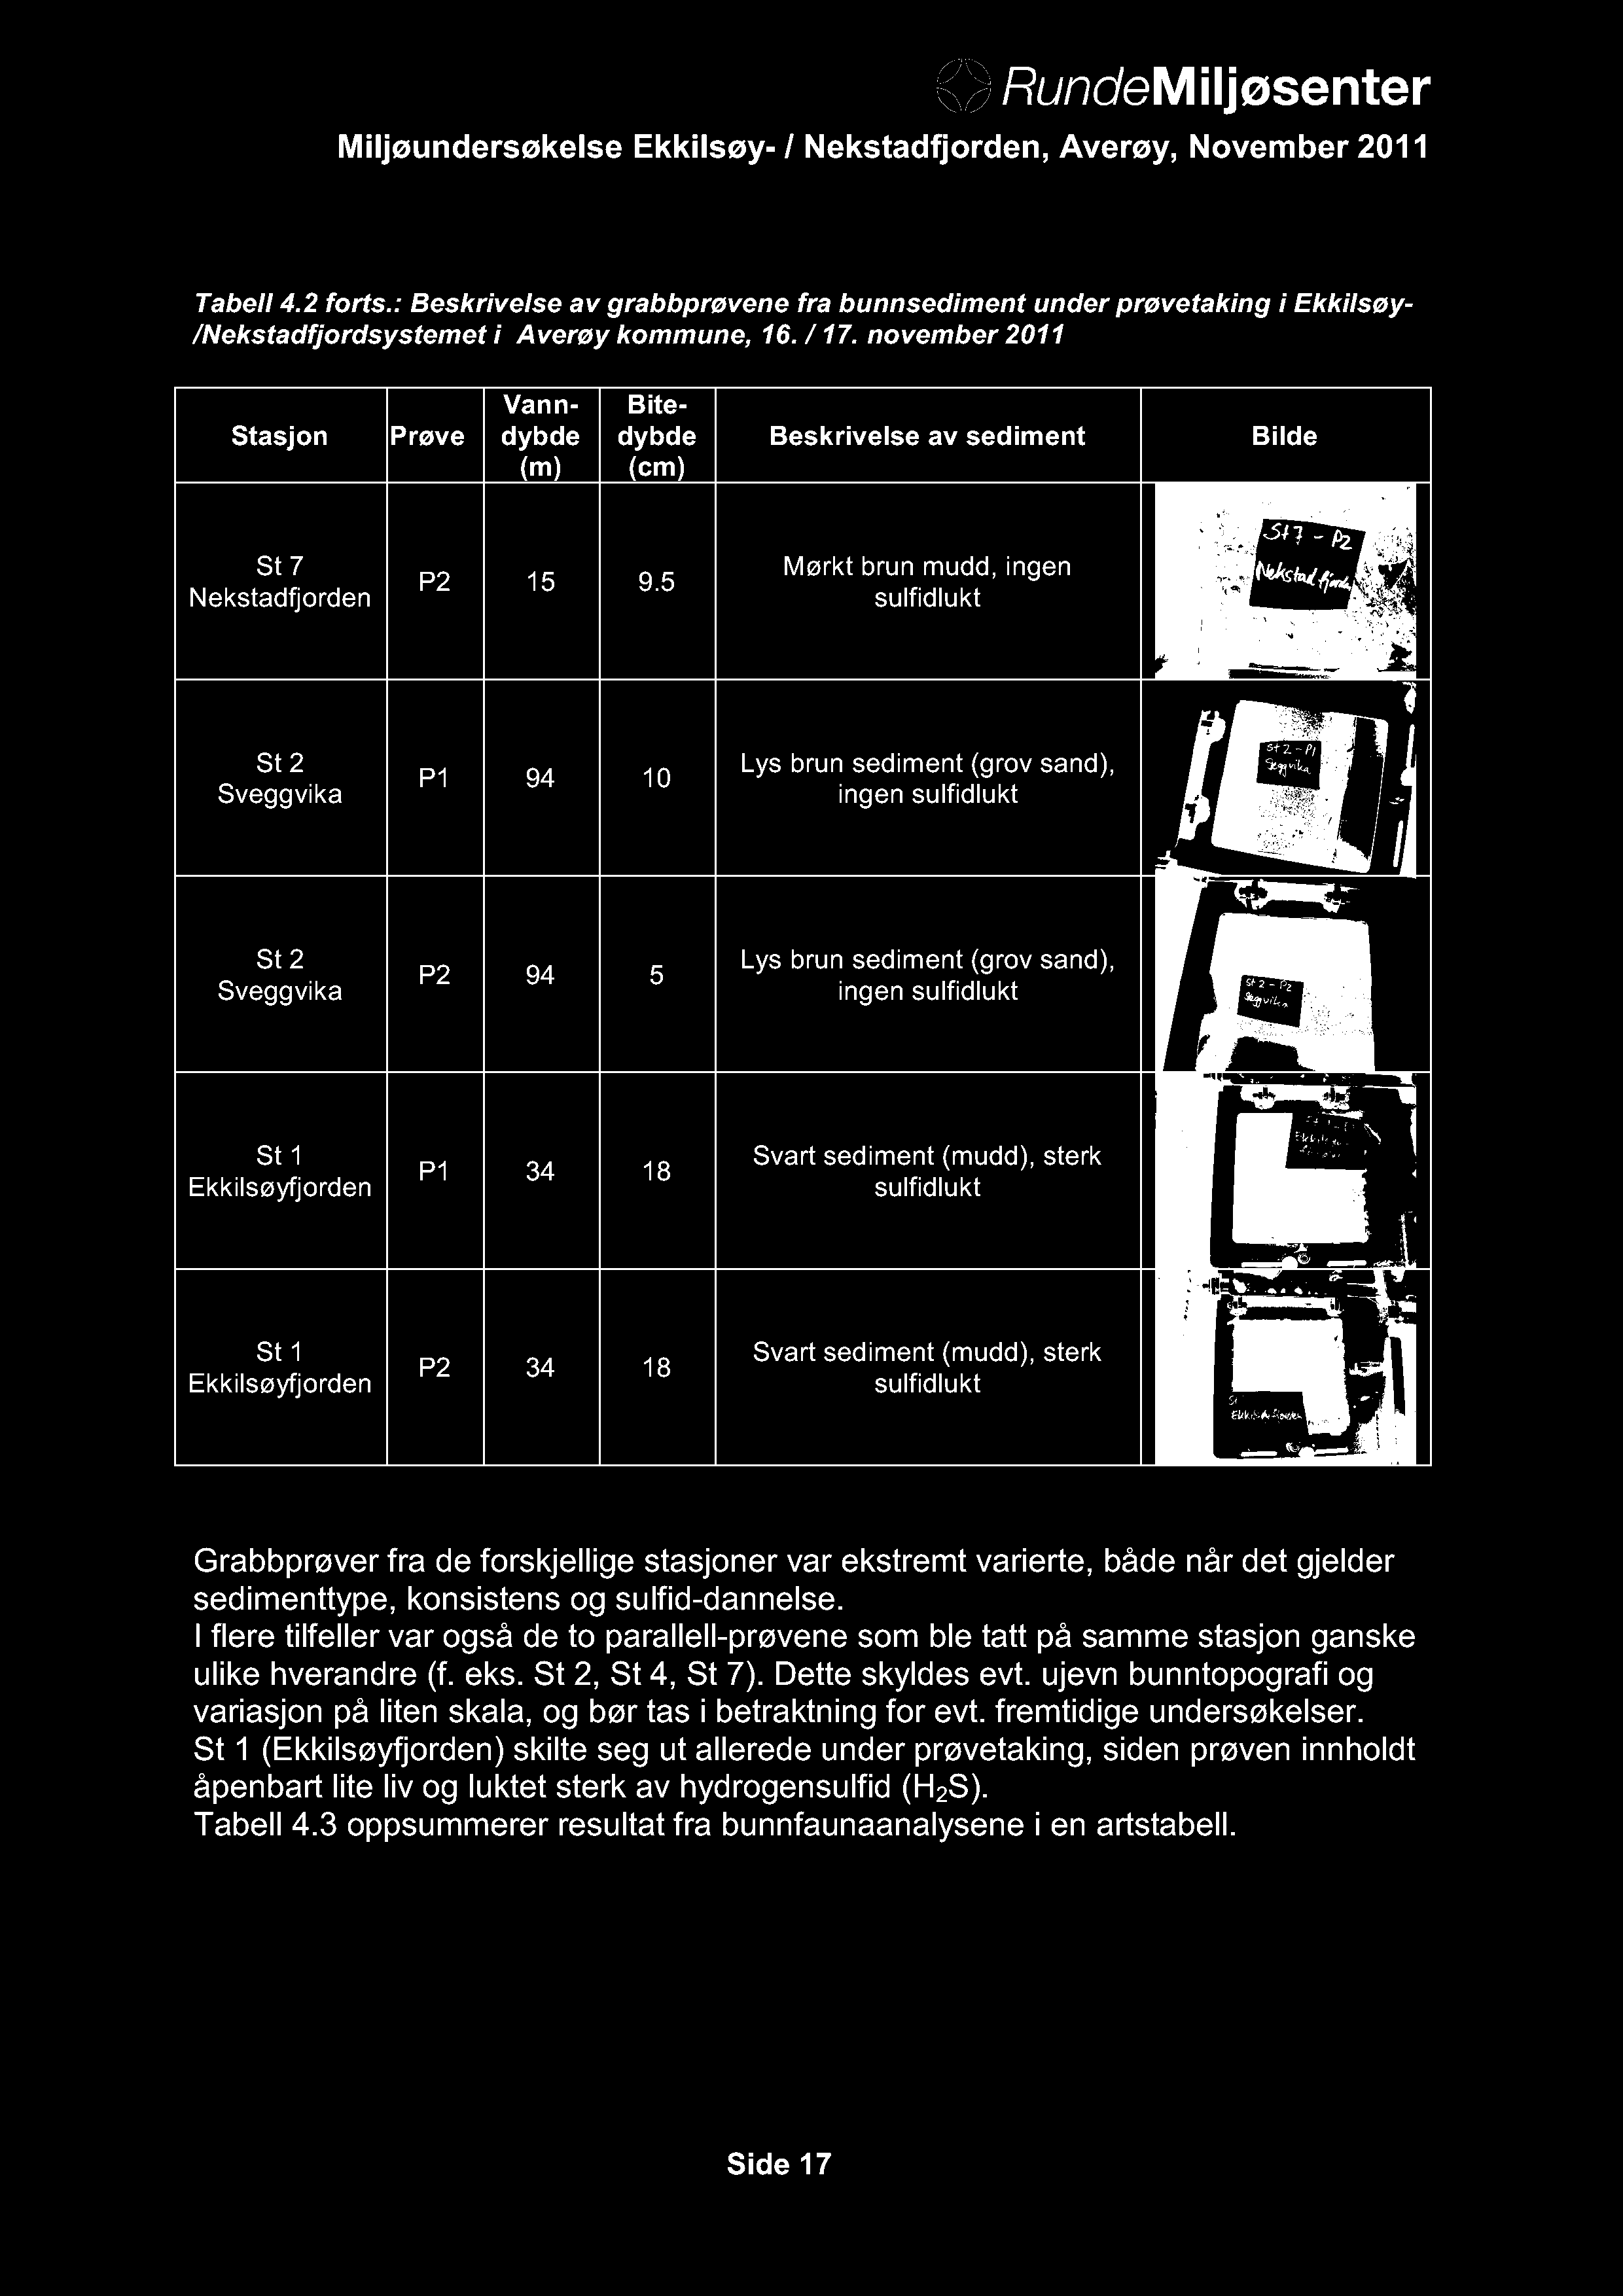 Tabell 4.2 forts.: Beskrivelse av grabbprøvene fra bunnsediment under prøvetaking i Ekkilsøy- /Nekstadfjordsystemet i Averøy kommune, 16. / 17.